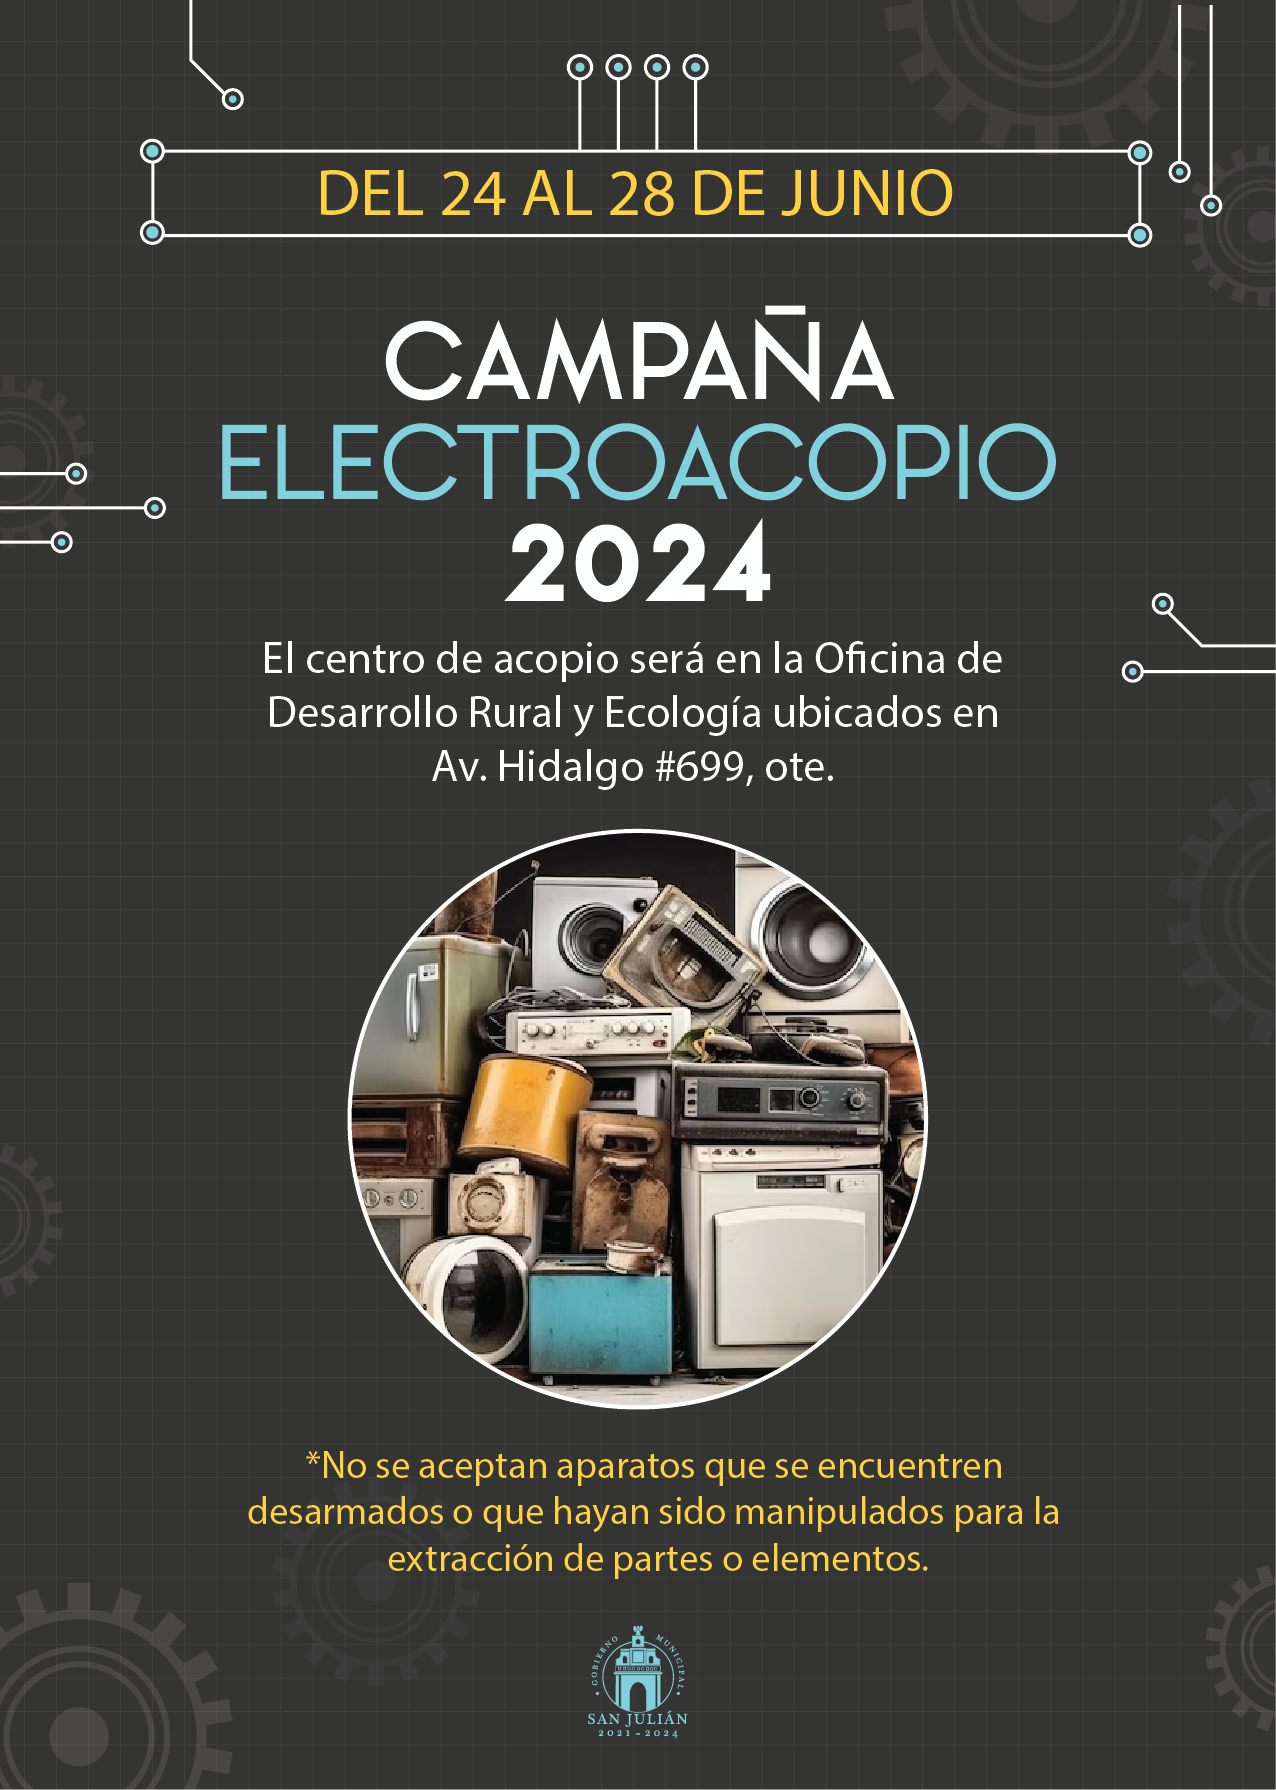 Campaña Electroacopio 2024